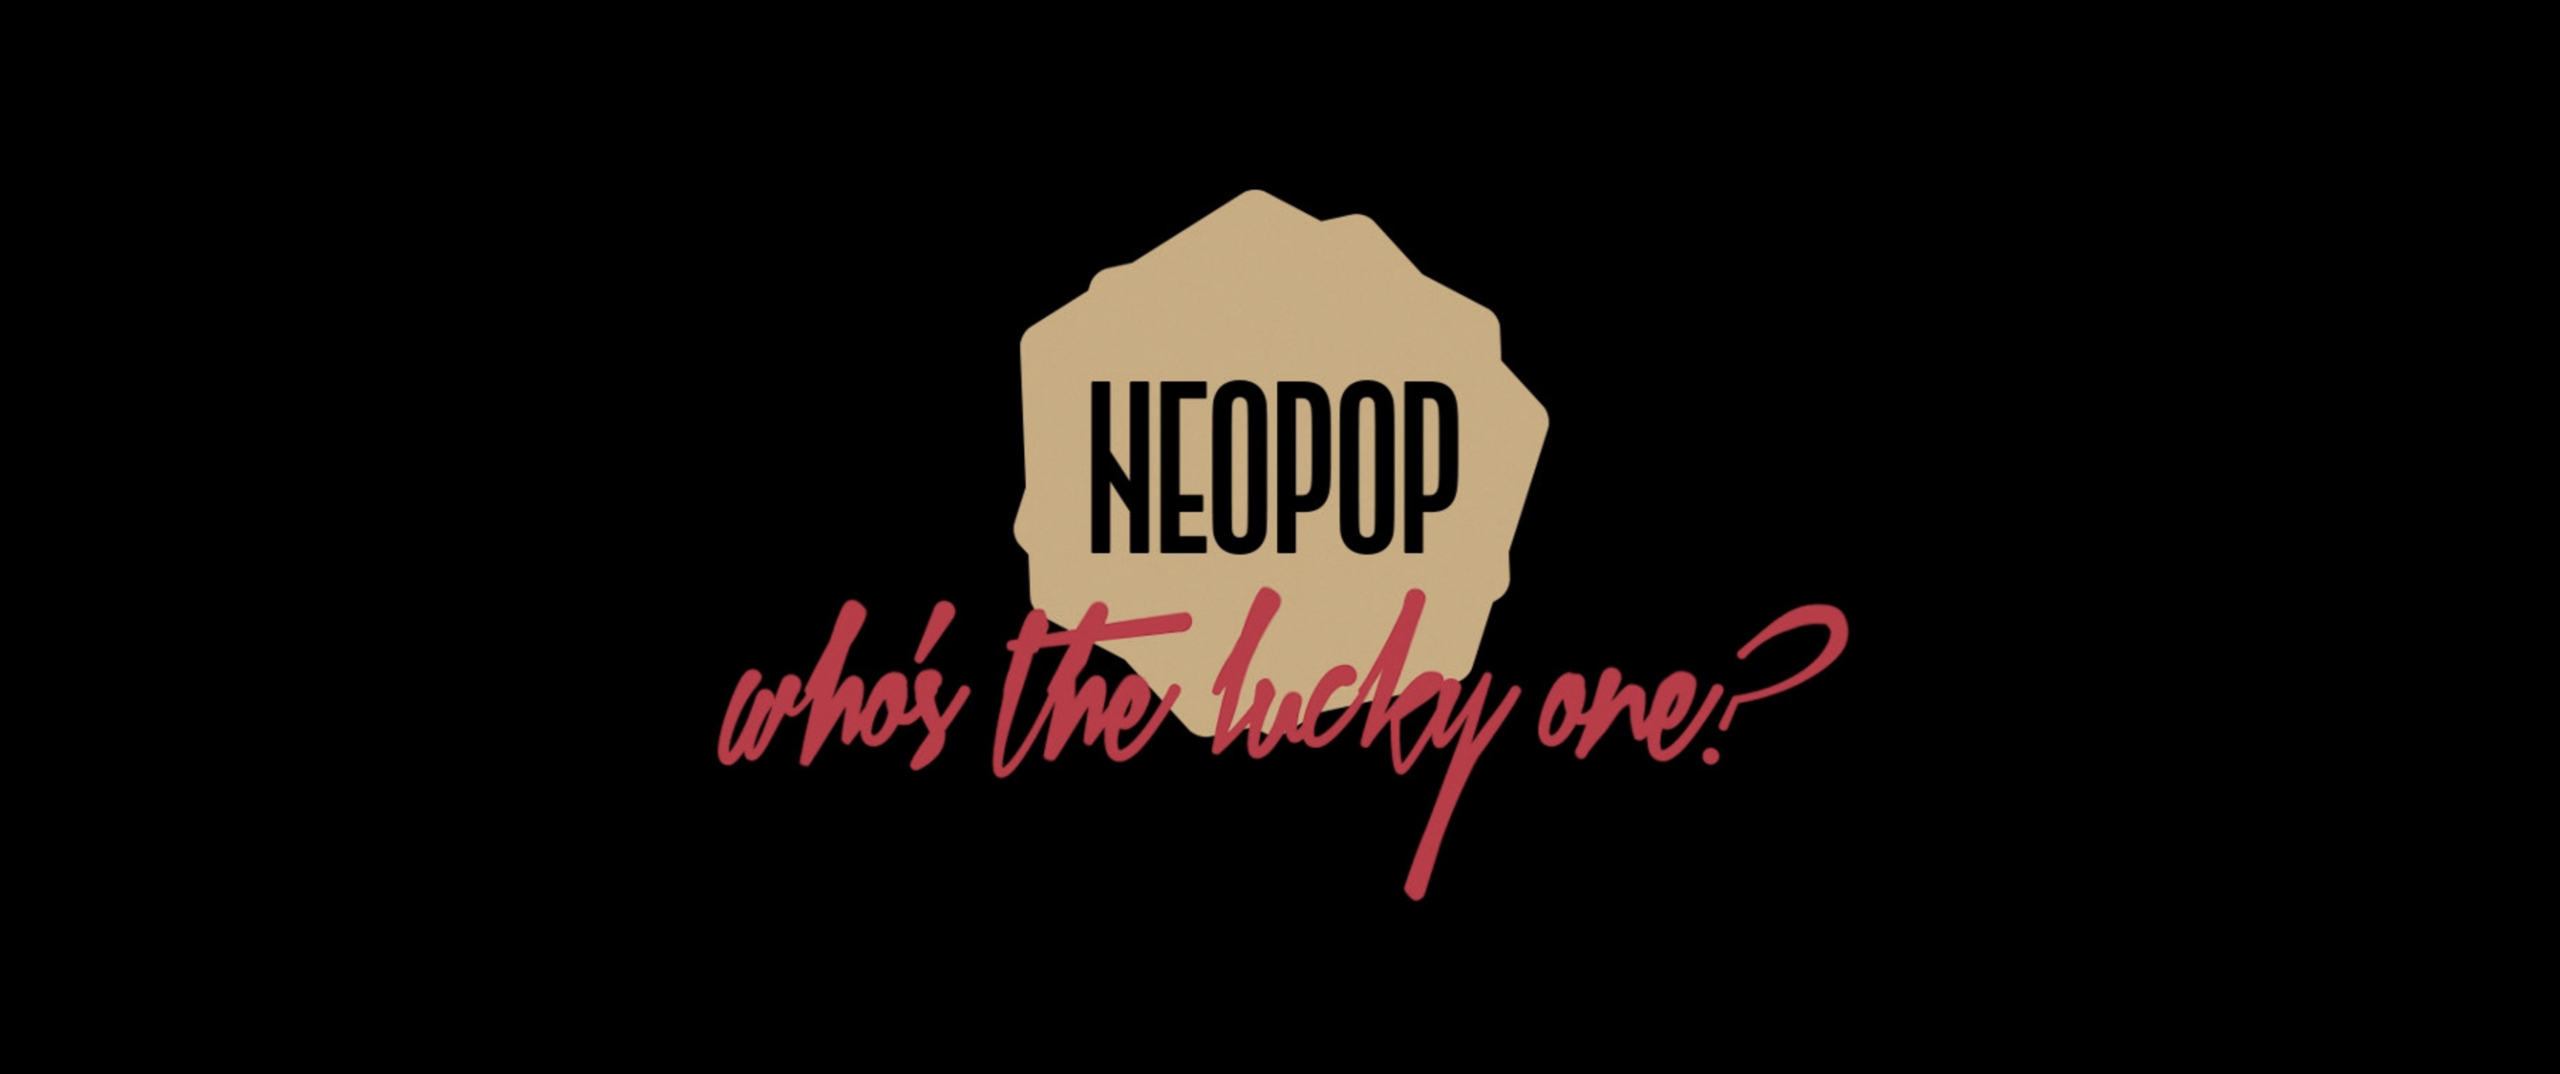 neopop_6